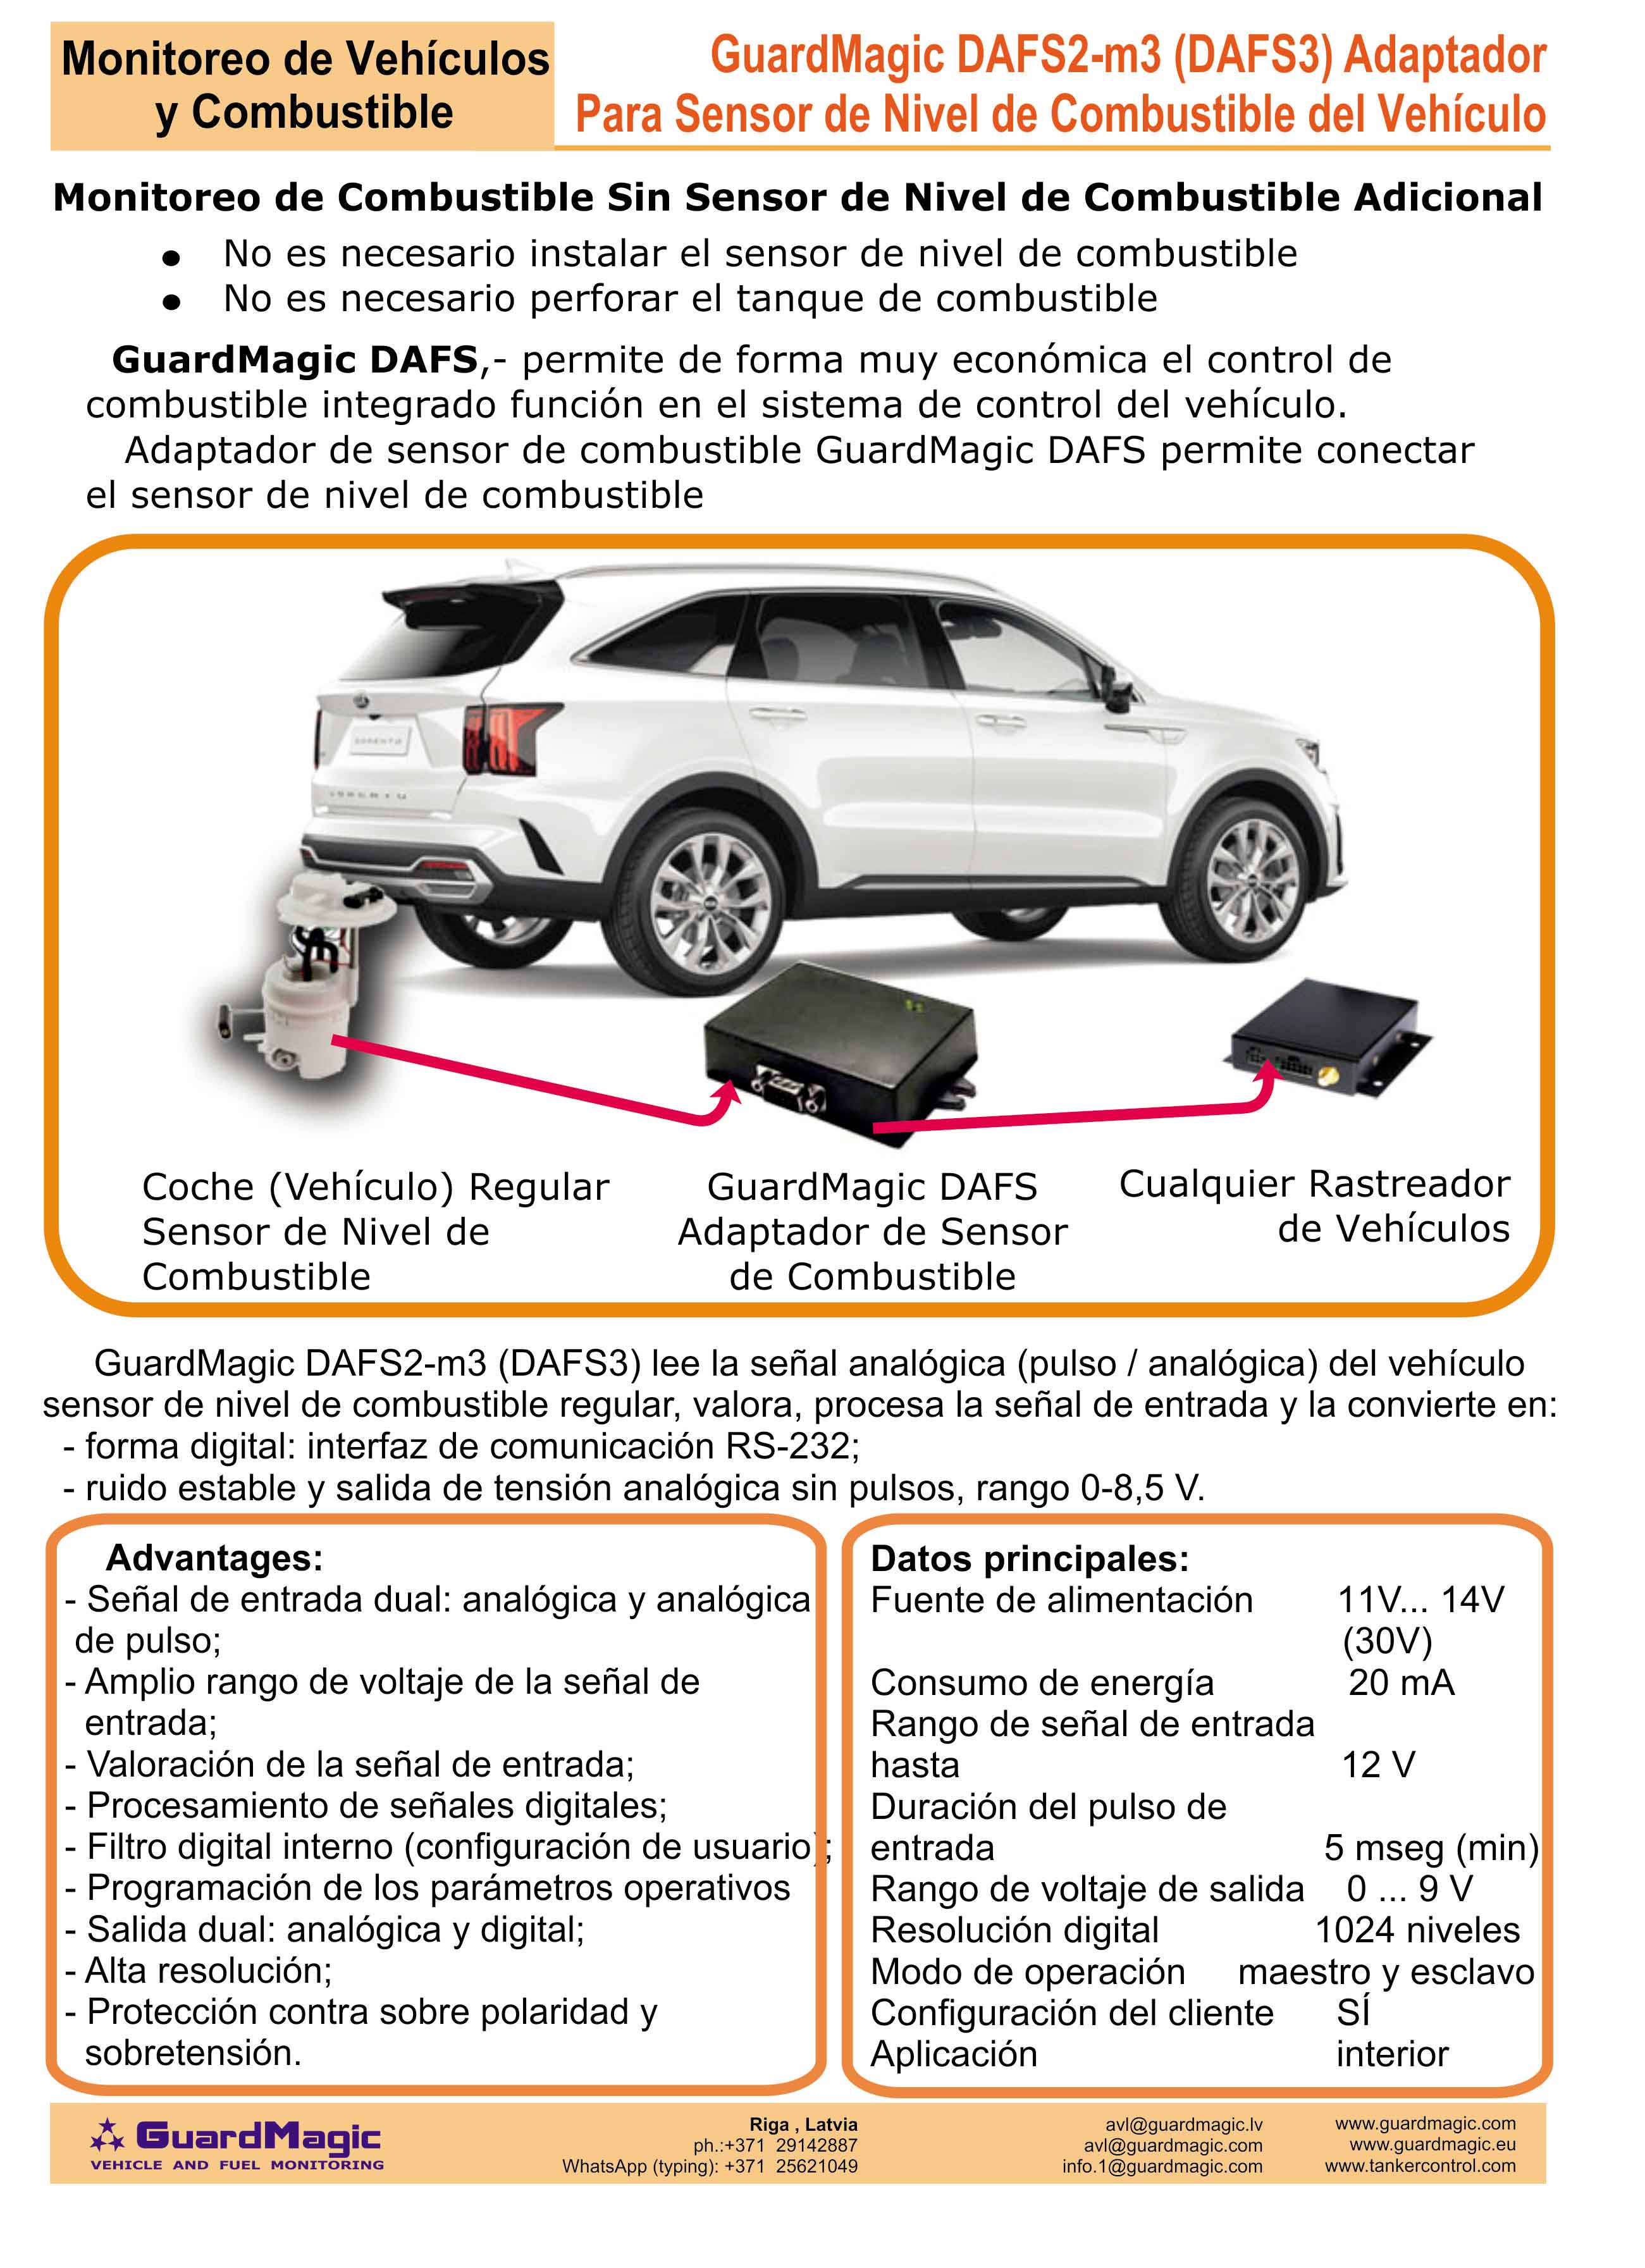 GuardMagic DAFS3 para monitoreo de combustible de vehículos